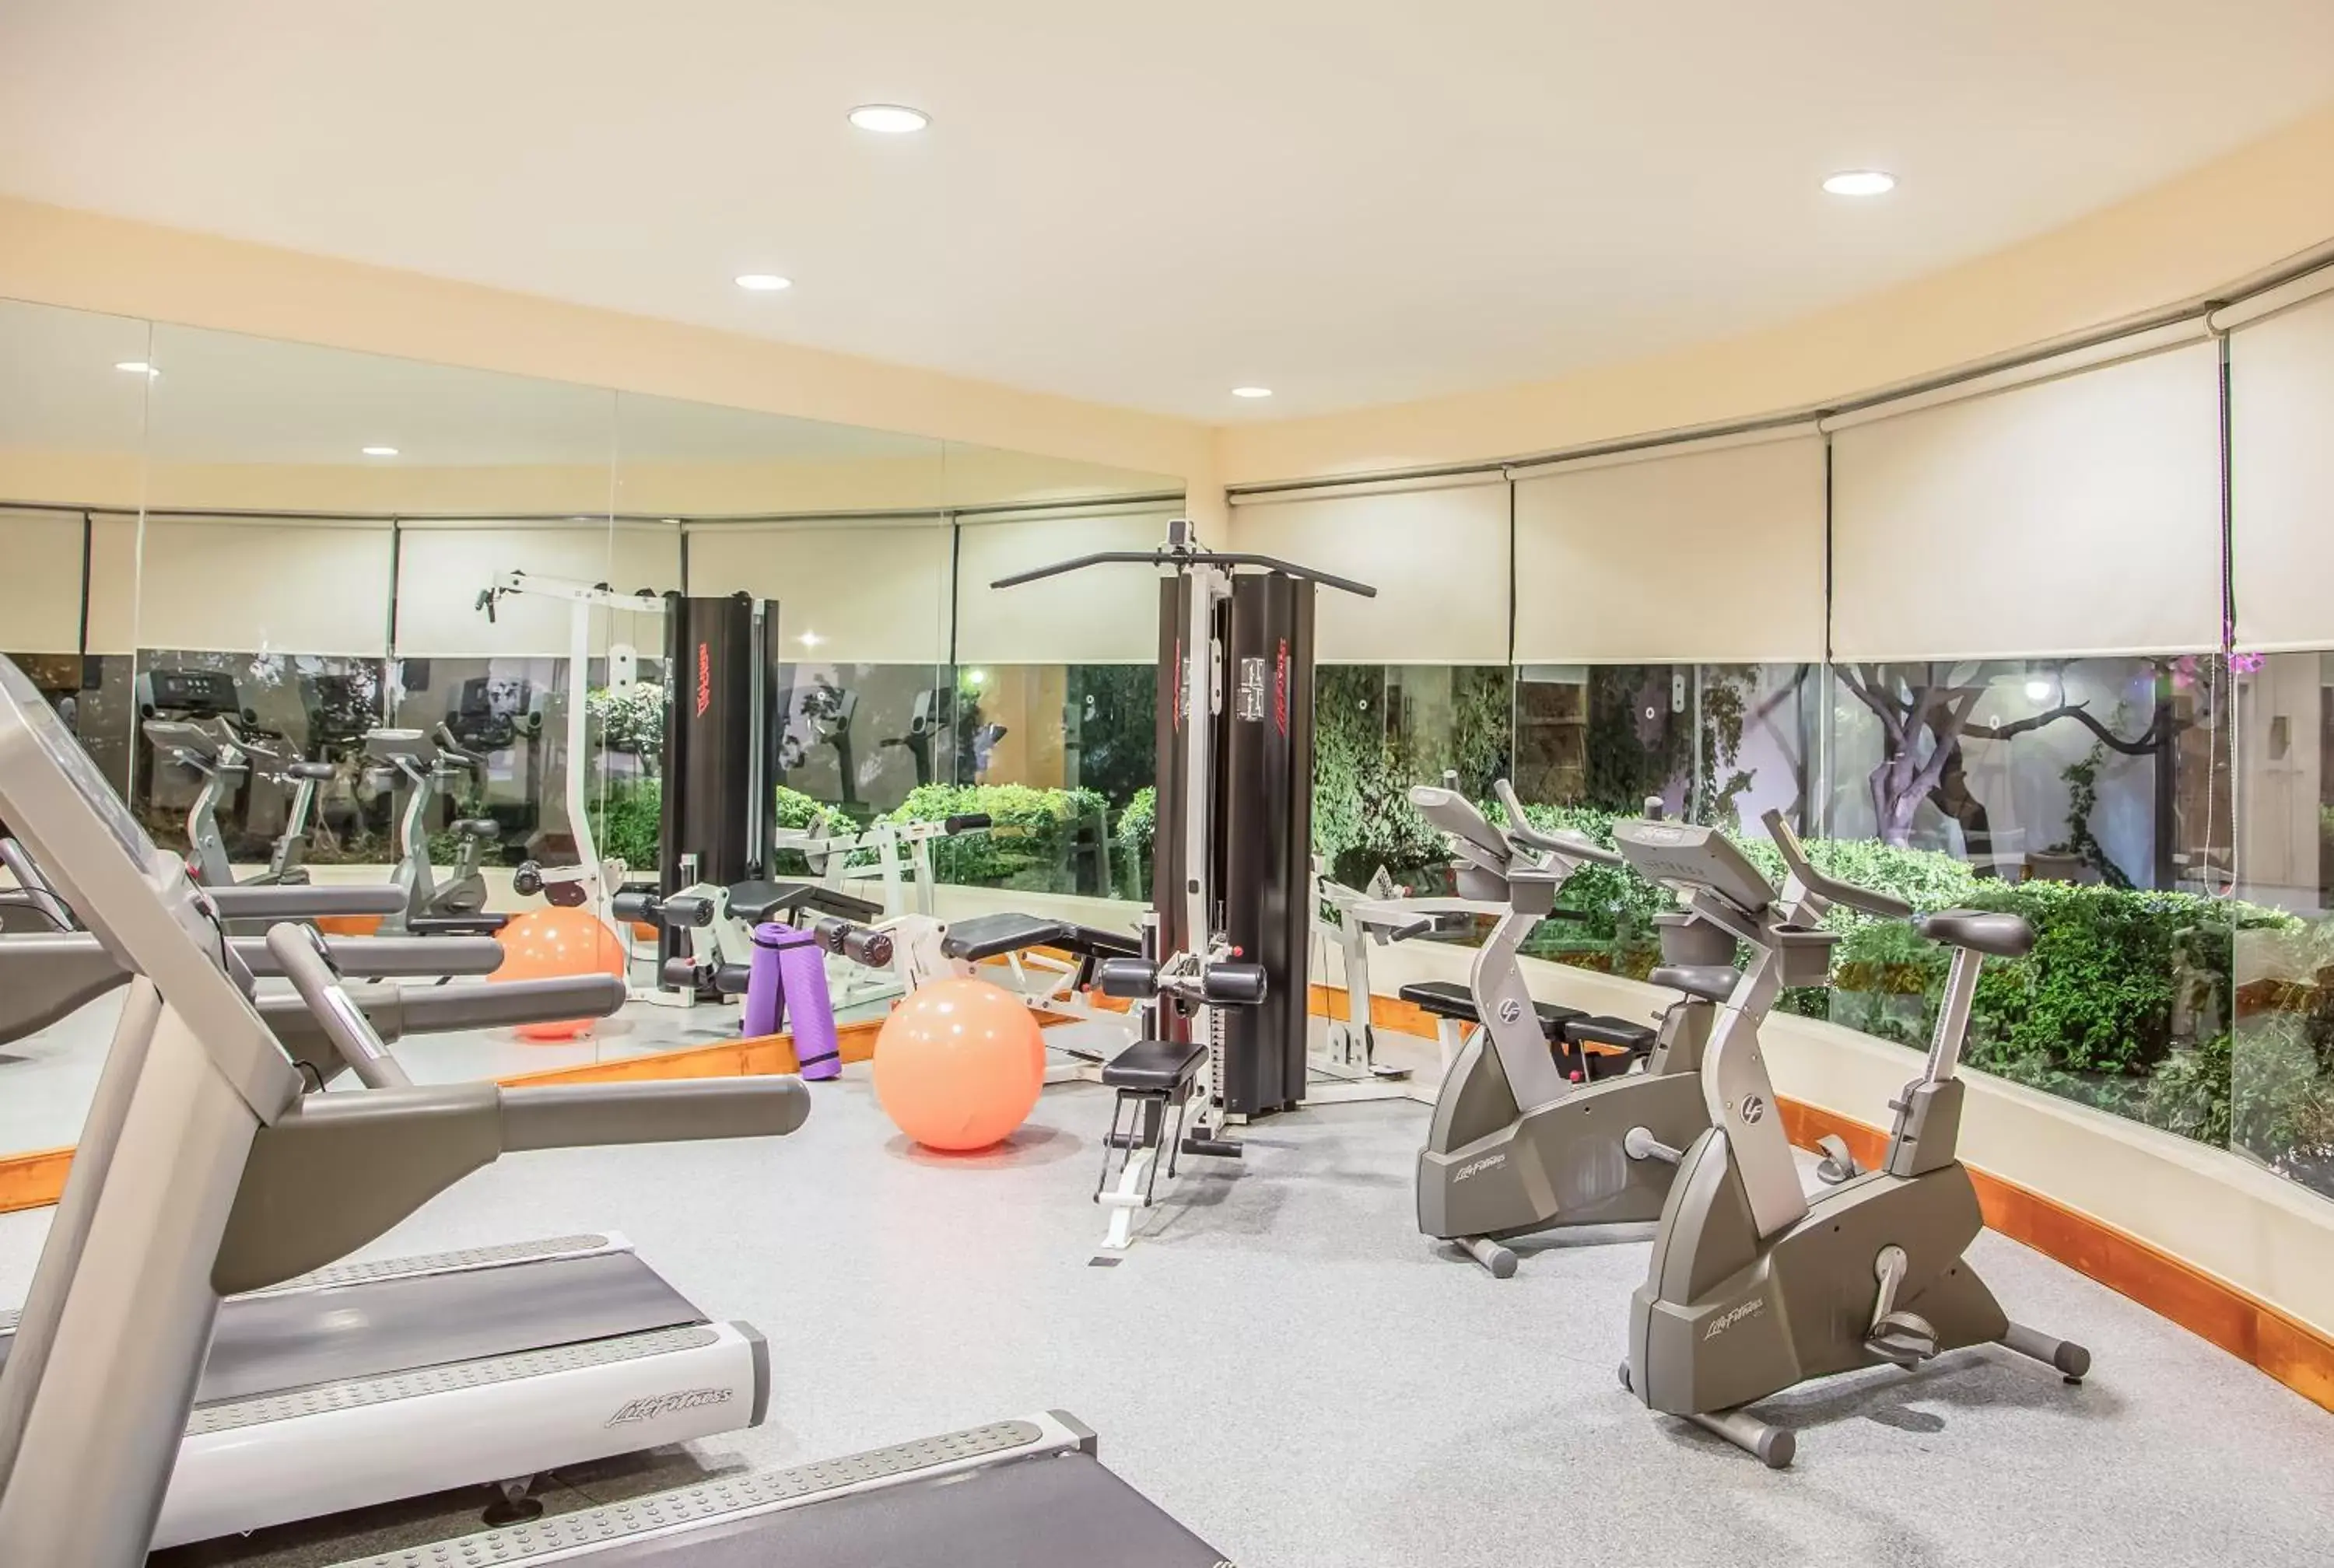 Fitness centre/facilities, Fitness Center/Facilities in Fiesta Inn Tijuana Otay Aeropuerto